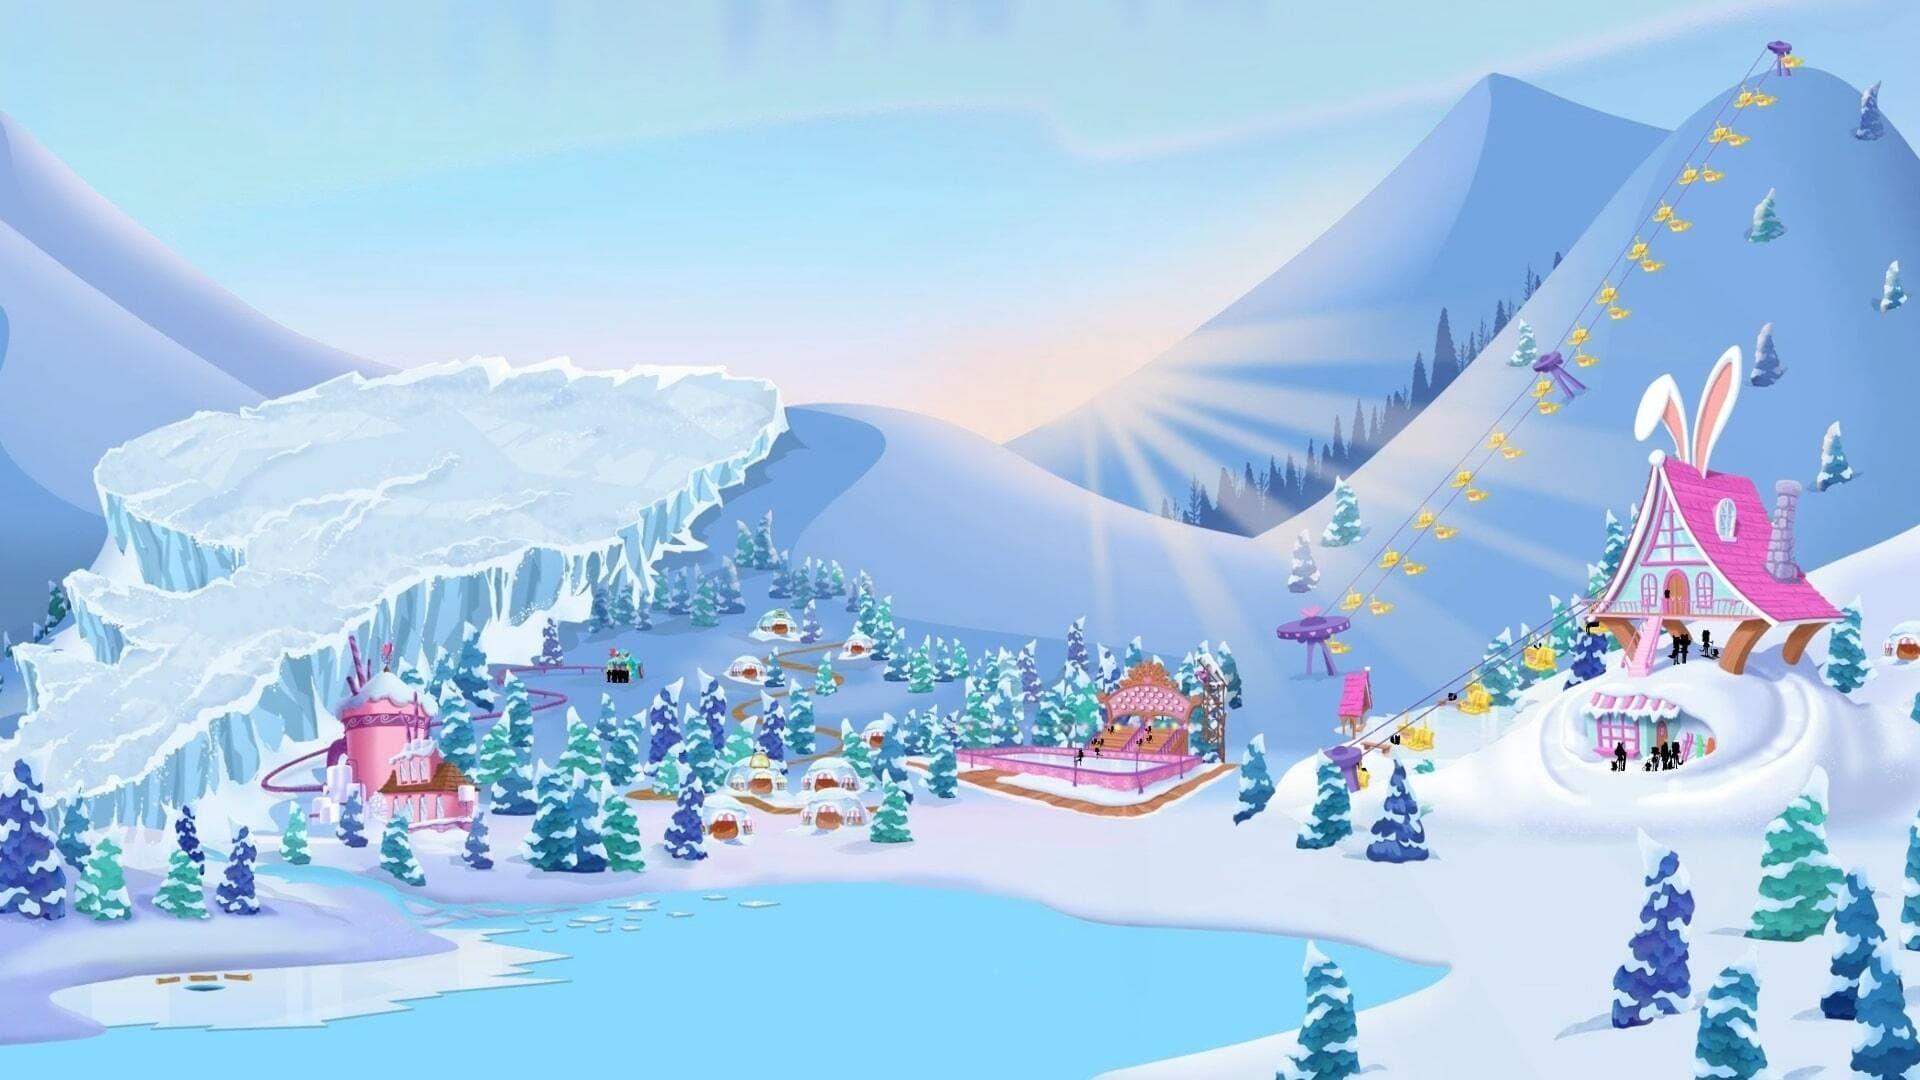 Enchantimals: Secrets of Snowy Valley backdrop